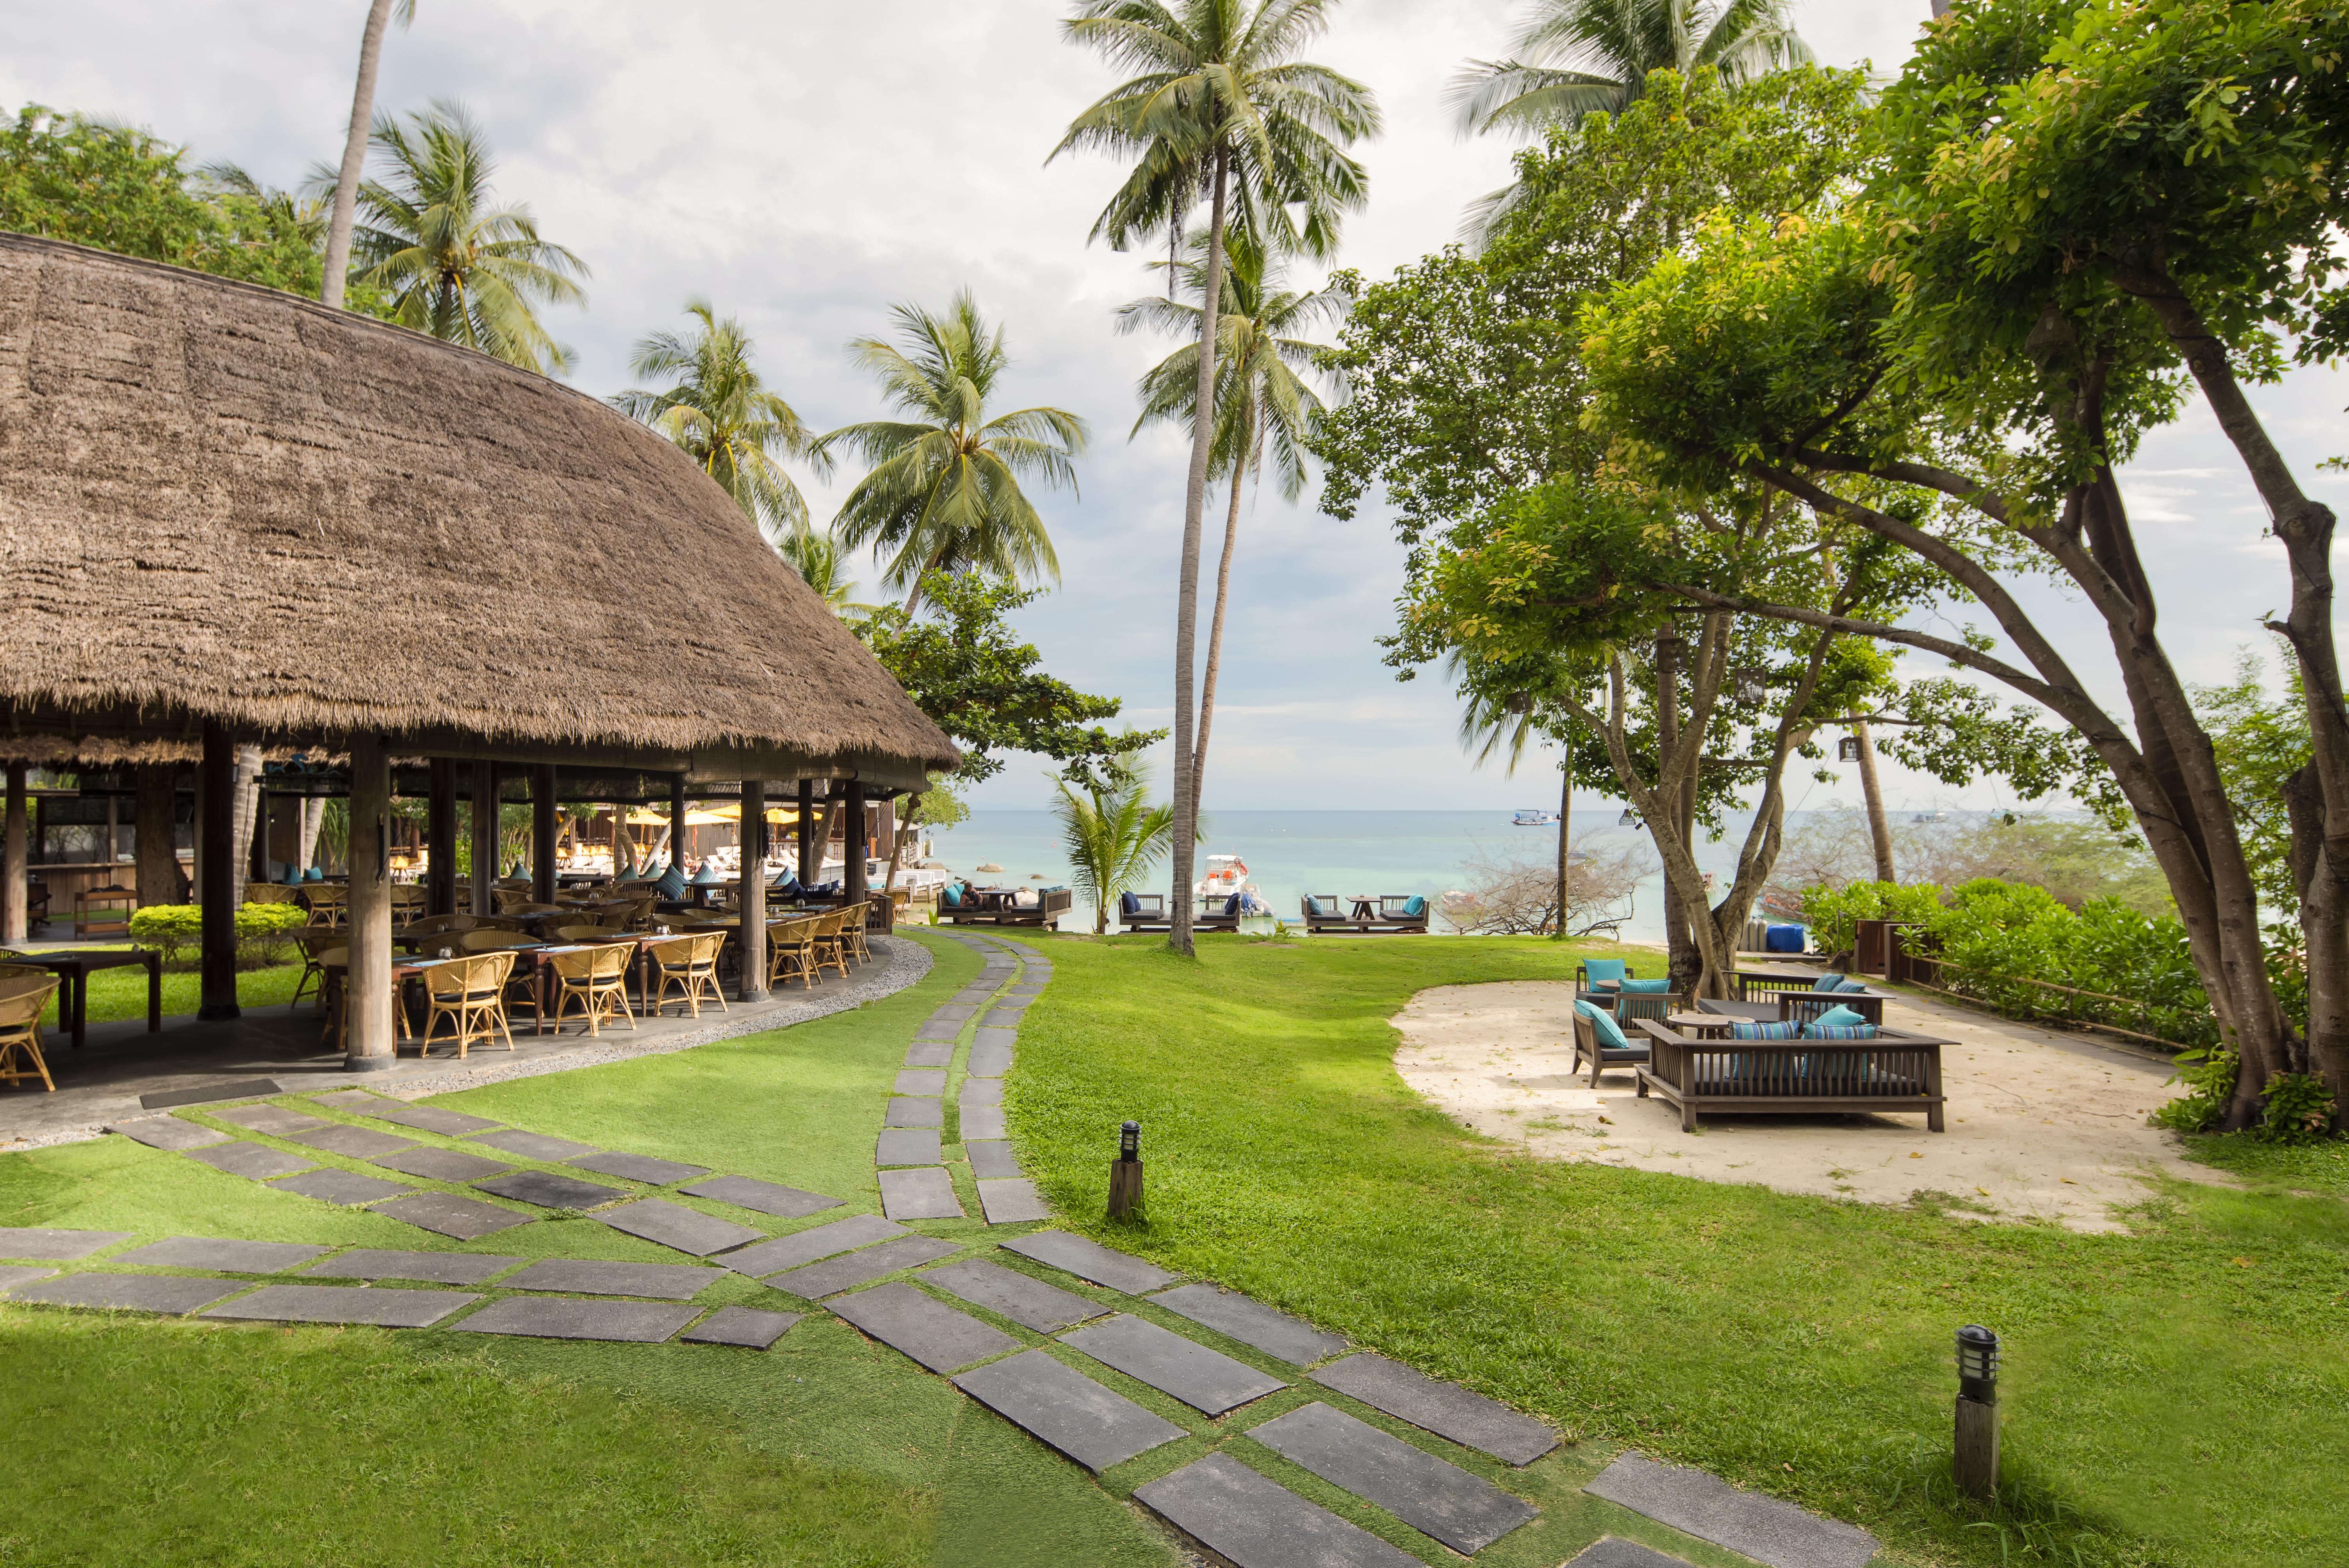 โรงแรม หาดเทียนบีชรีสอร์ท เกาะเต่า 4* (ไทย) - จาก 4338 THB | HOTELMIX